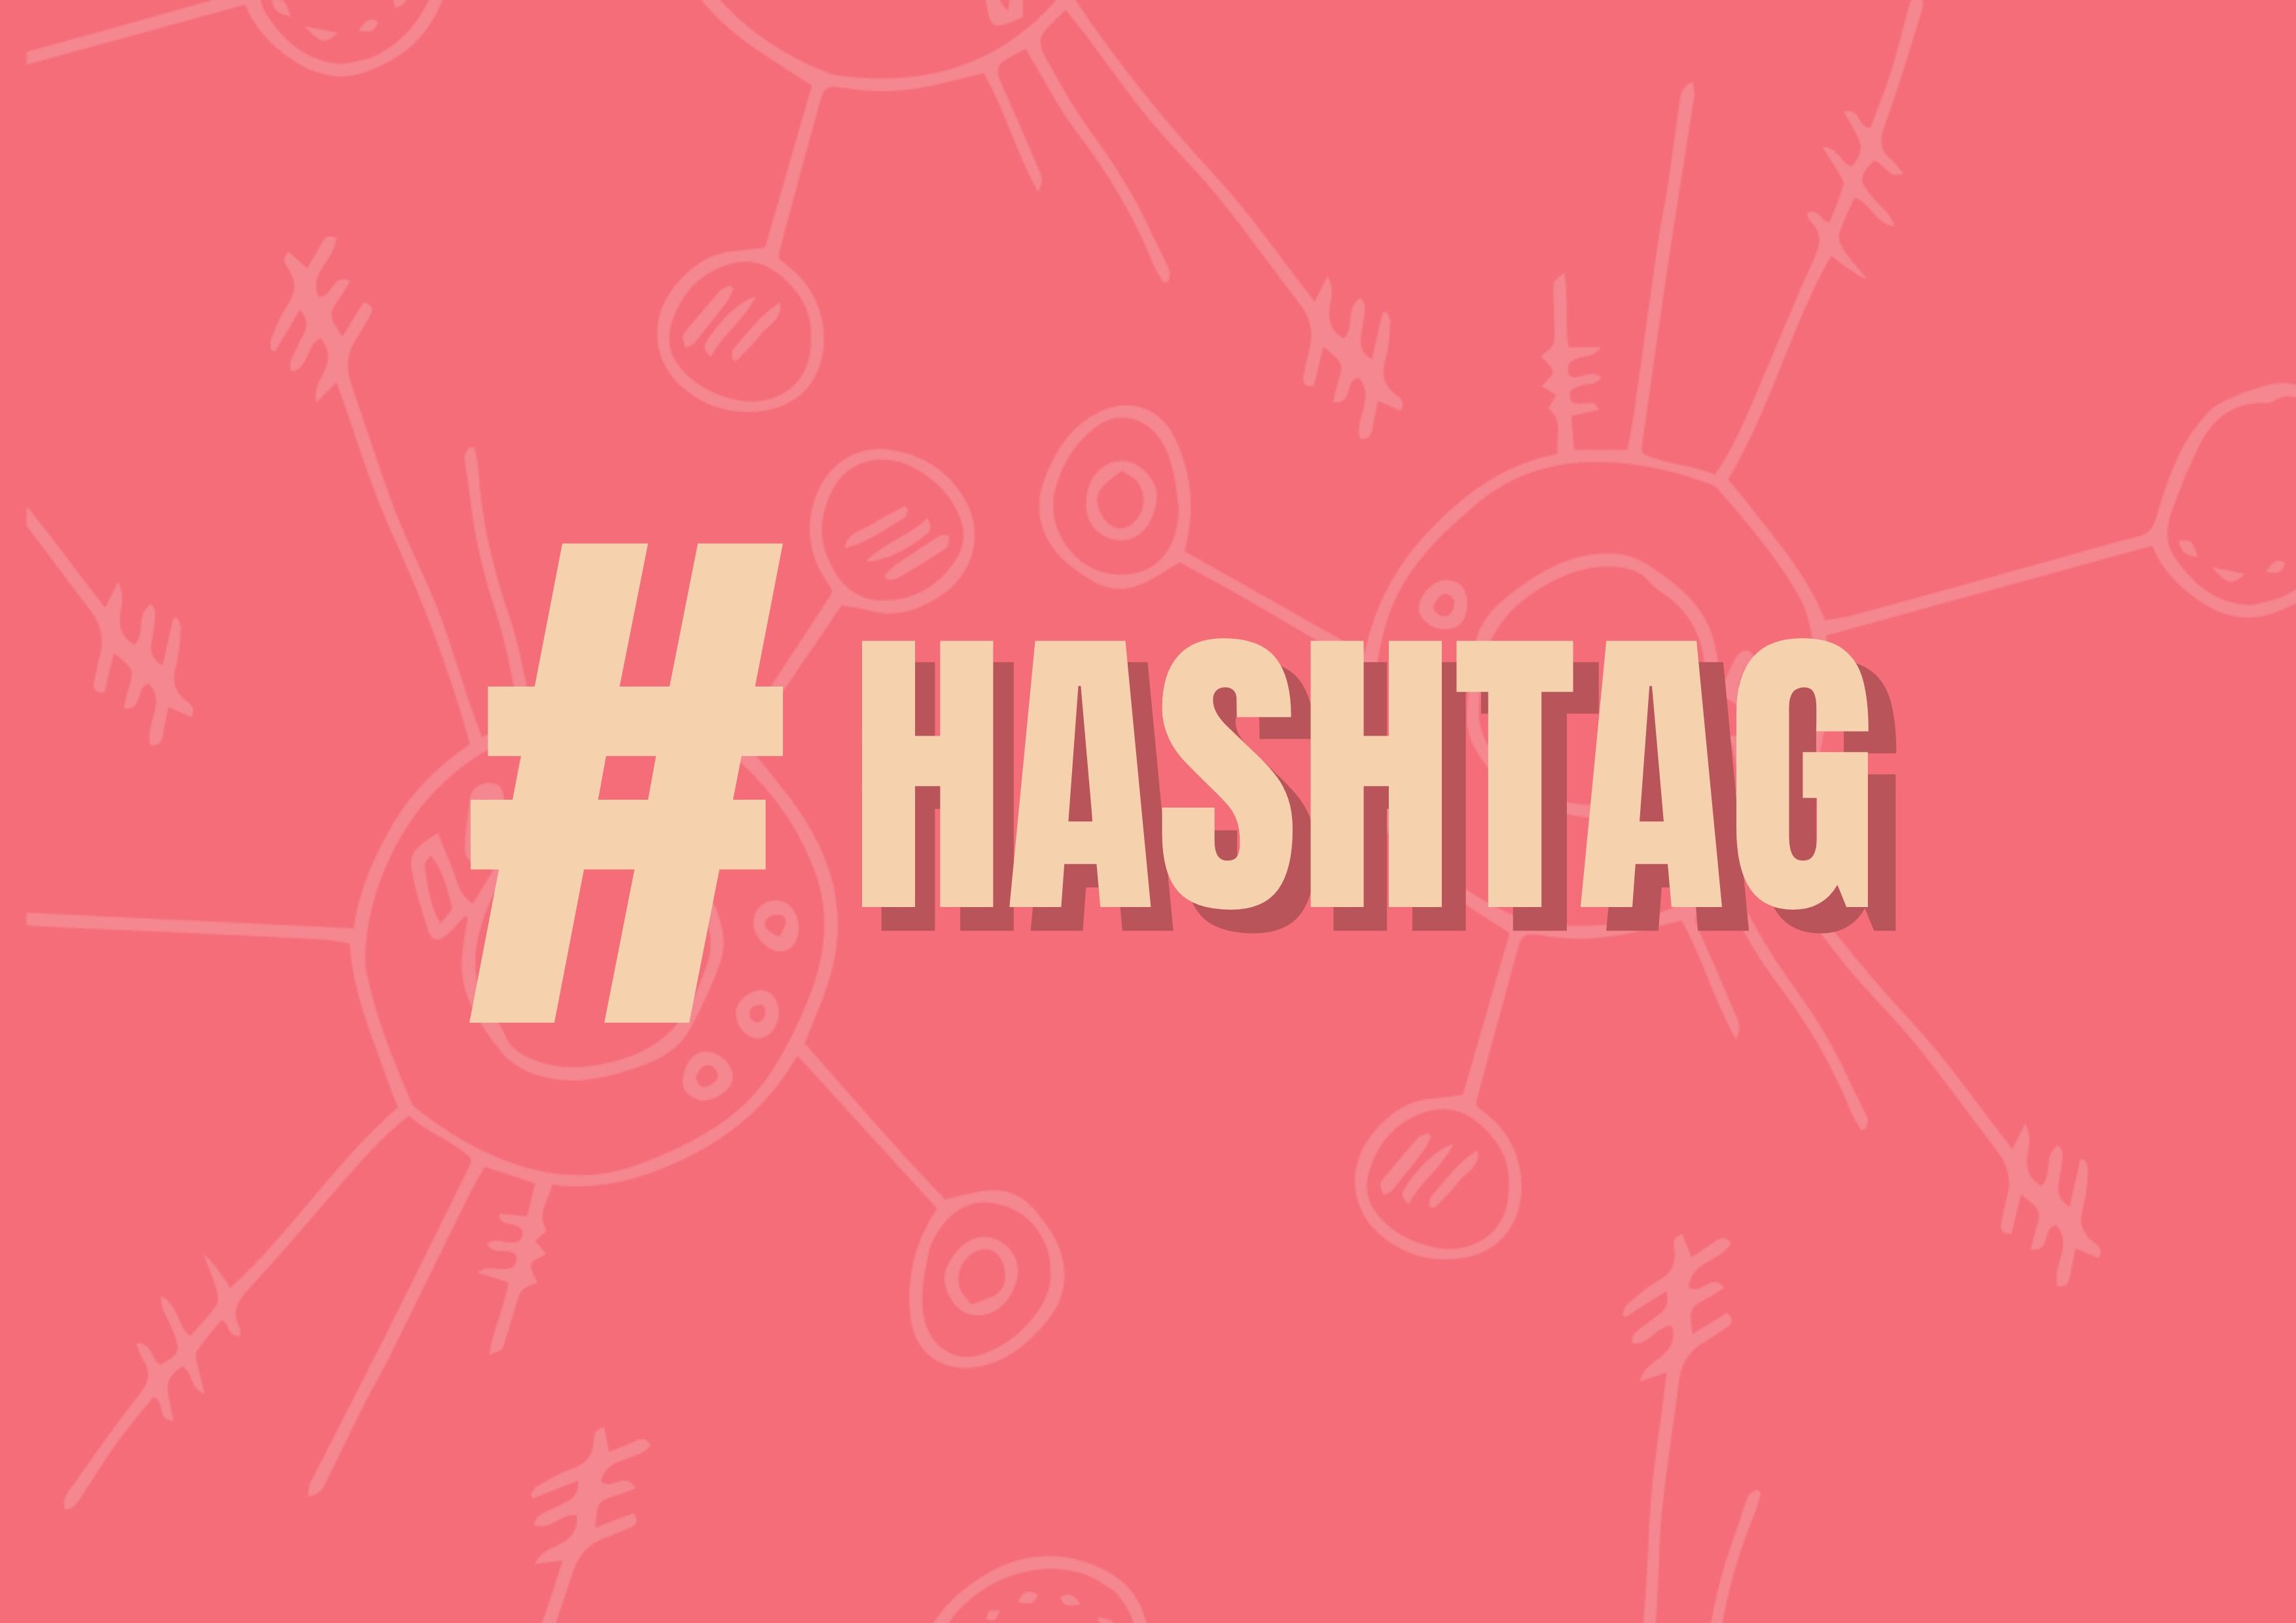 Roter Hintergrund mit "#hashtag" in Gelb als Titel - Warum du möglicherweise die Hashtags in deinen Beiträgen ändern musst - Bild